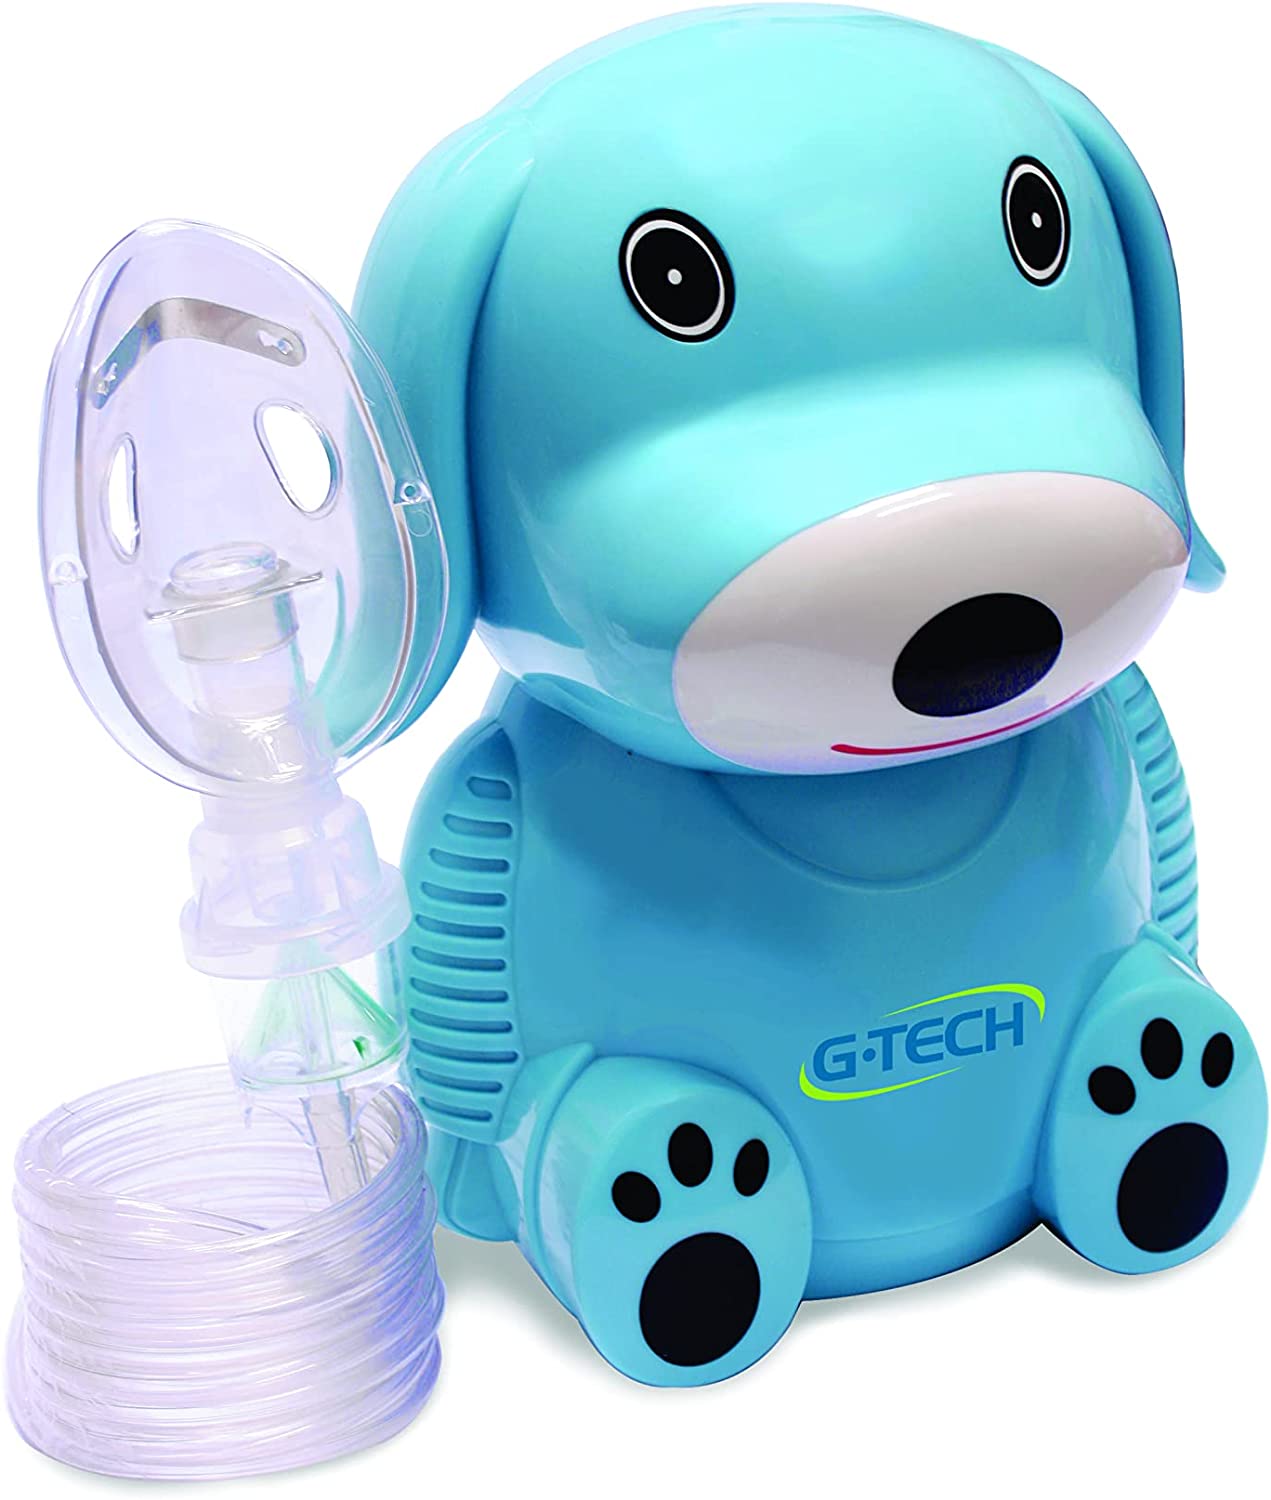 Nebulizador G-Tech Nebdog: Perfeito para nebulização em crianças (Foto: Divulgação)